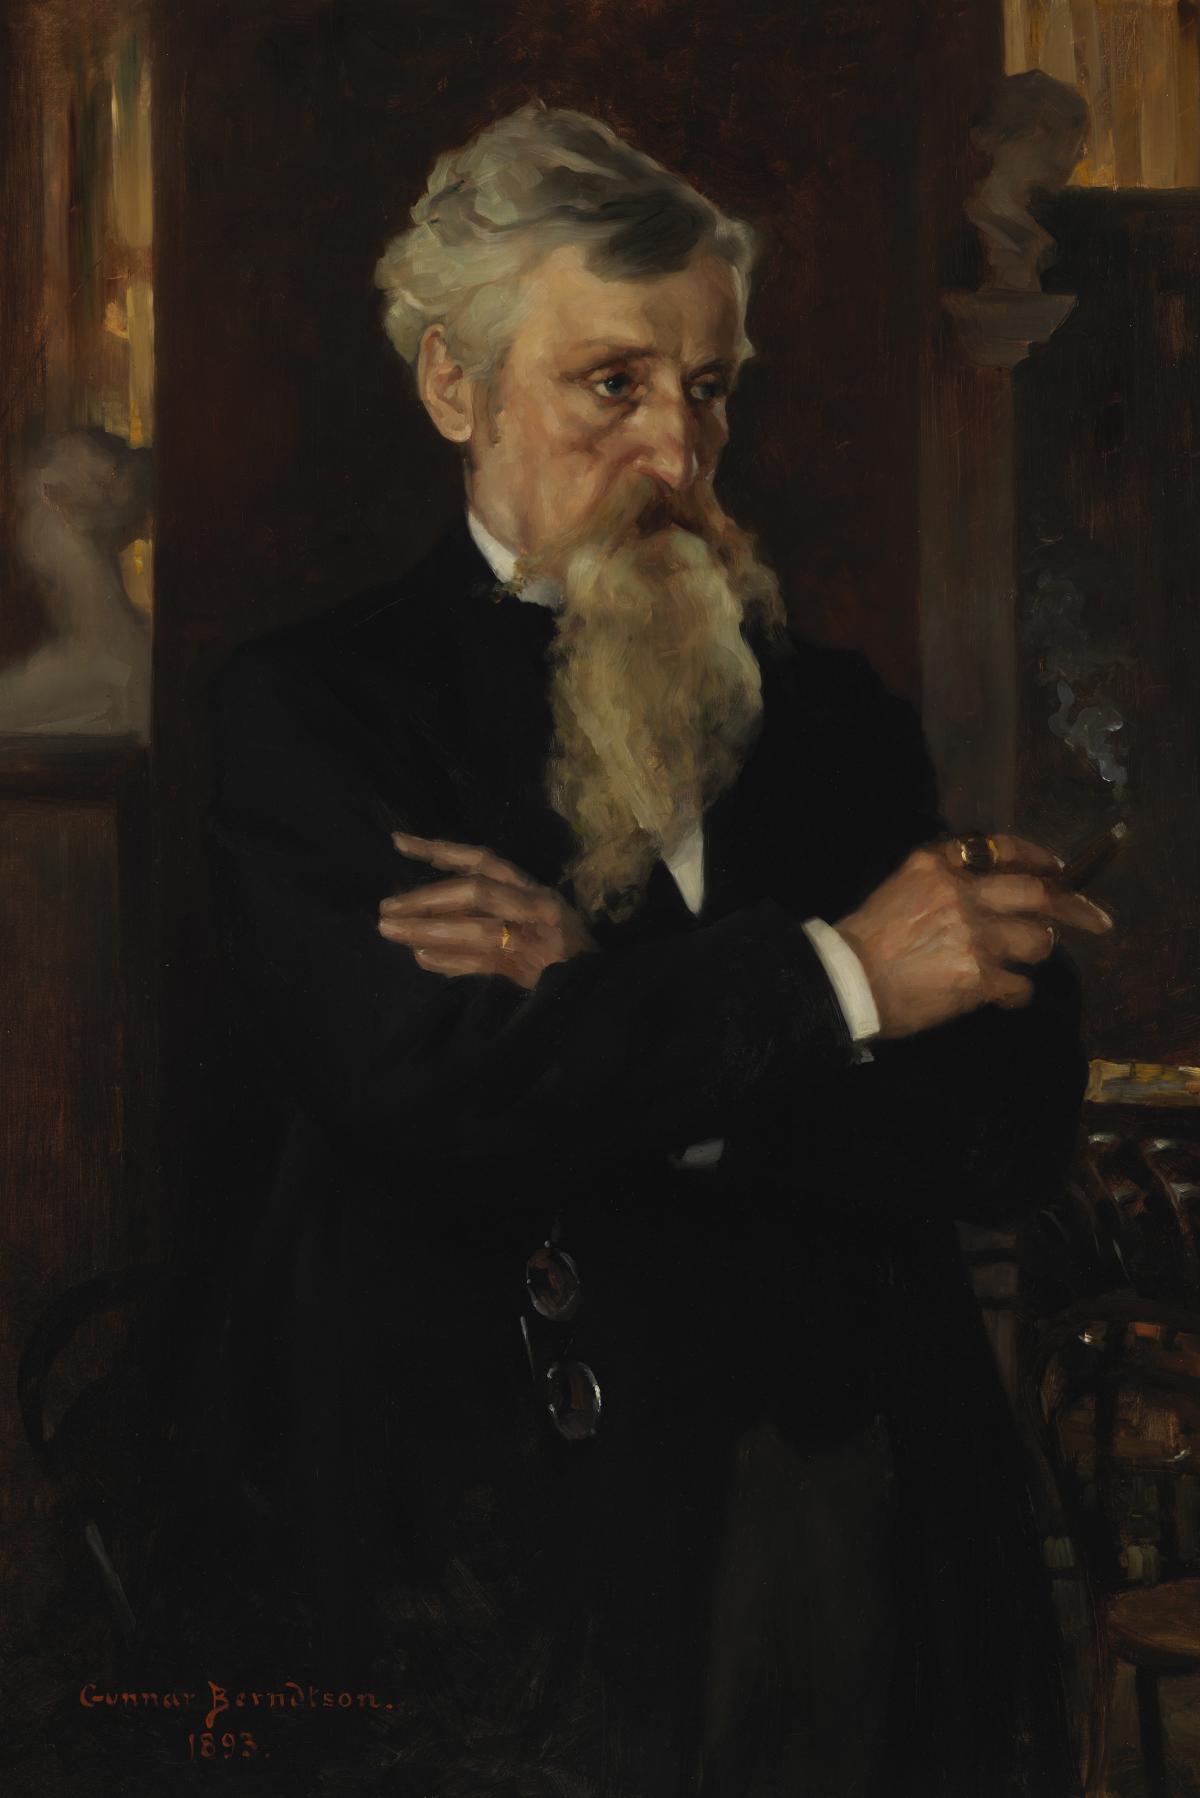 Gunnar Berndtsons oljemålning föreställer August Schauman med grått skägg och armarna i kors